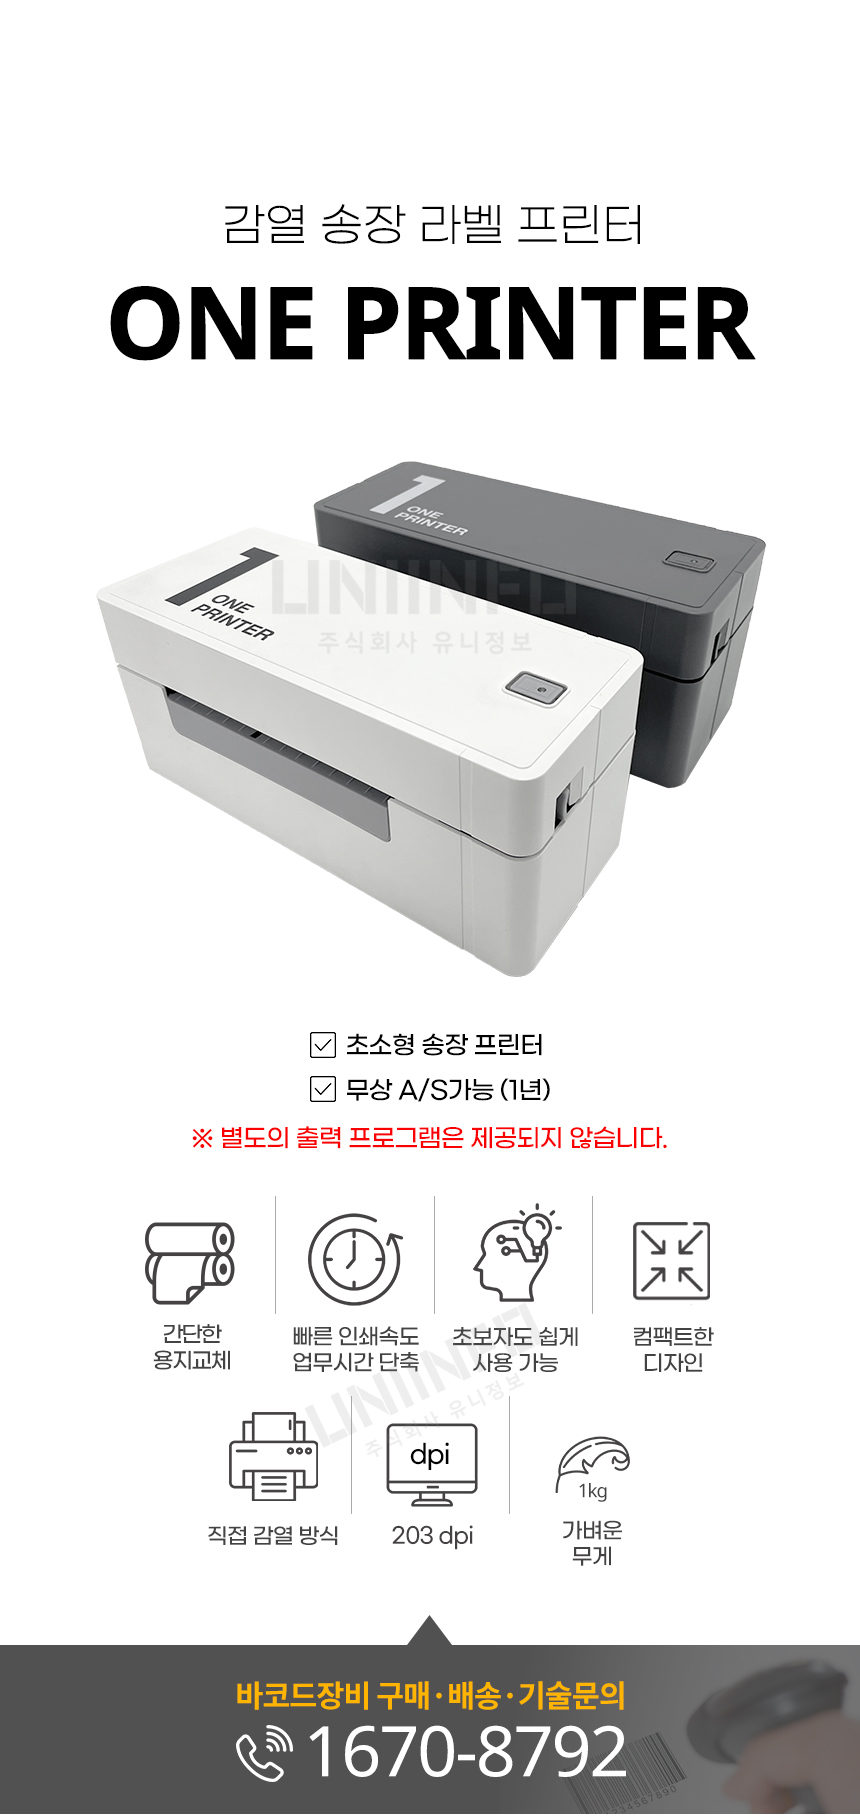 감열 송장 라벨 프린터 one printer 초소형 송장 프린터 무상 as 가능 해상도 203dpi 무게 1kg